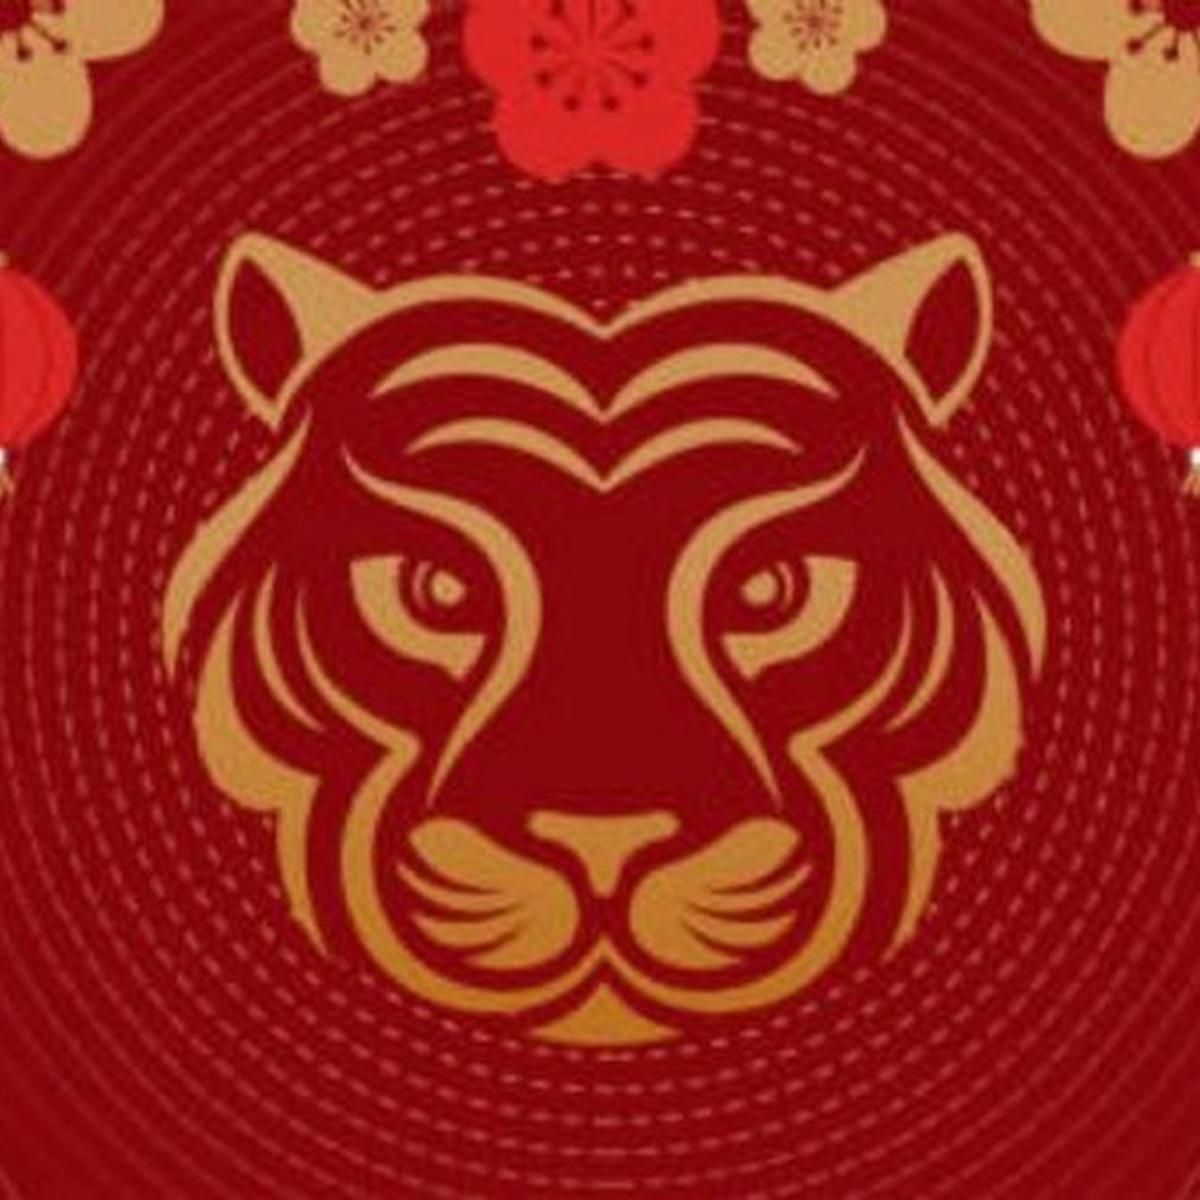 Horóscopo Chino 2022: qué animal te representa, predicciones y cuándo  inicia el Año Nuevo, Zodiaco, Tigre de Agua, México, MX, Estados  Unidos, USA, MEXICO